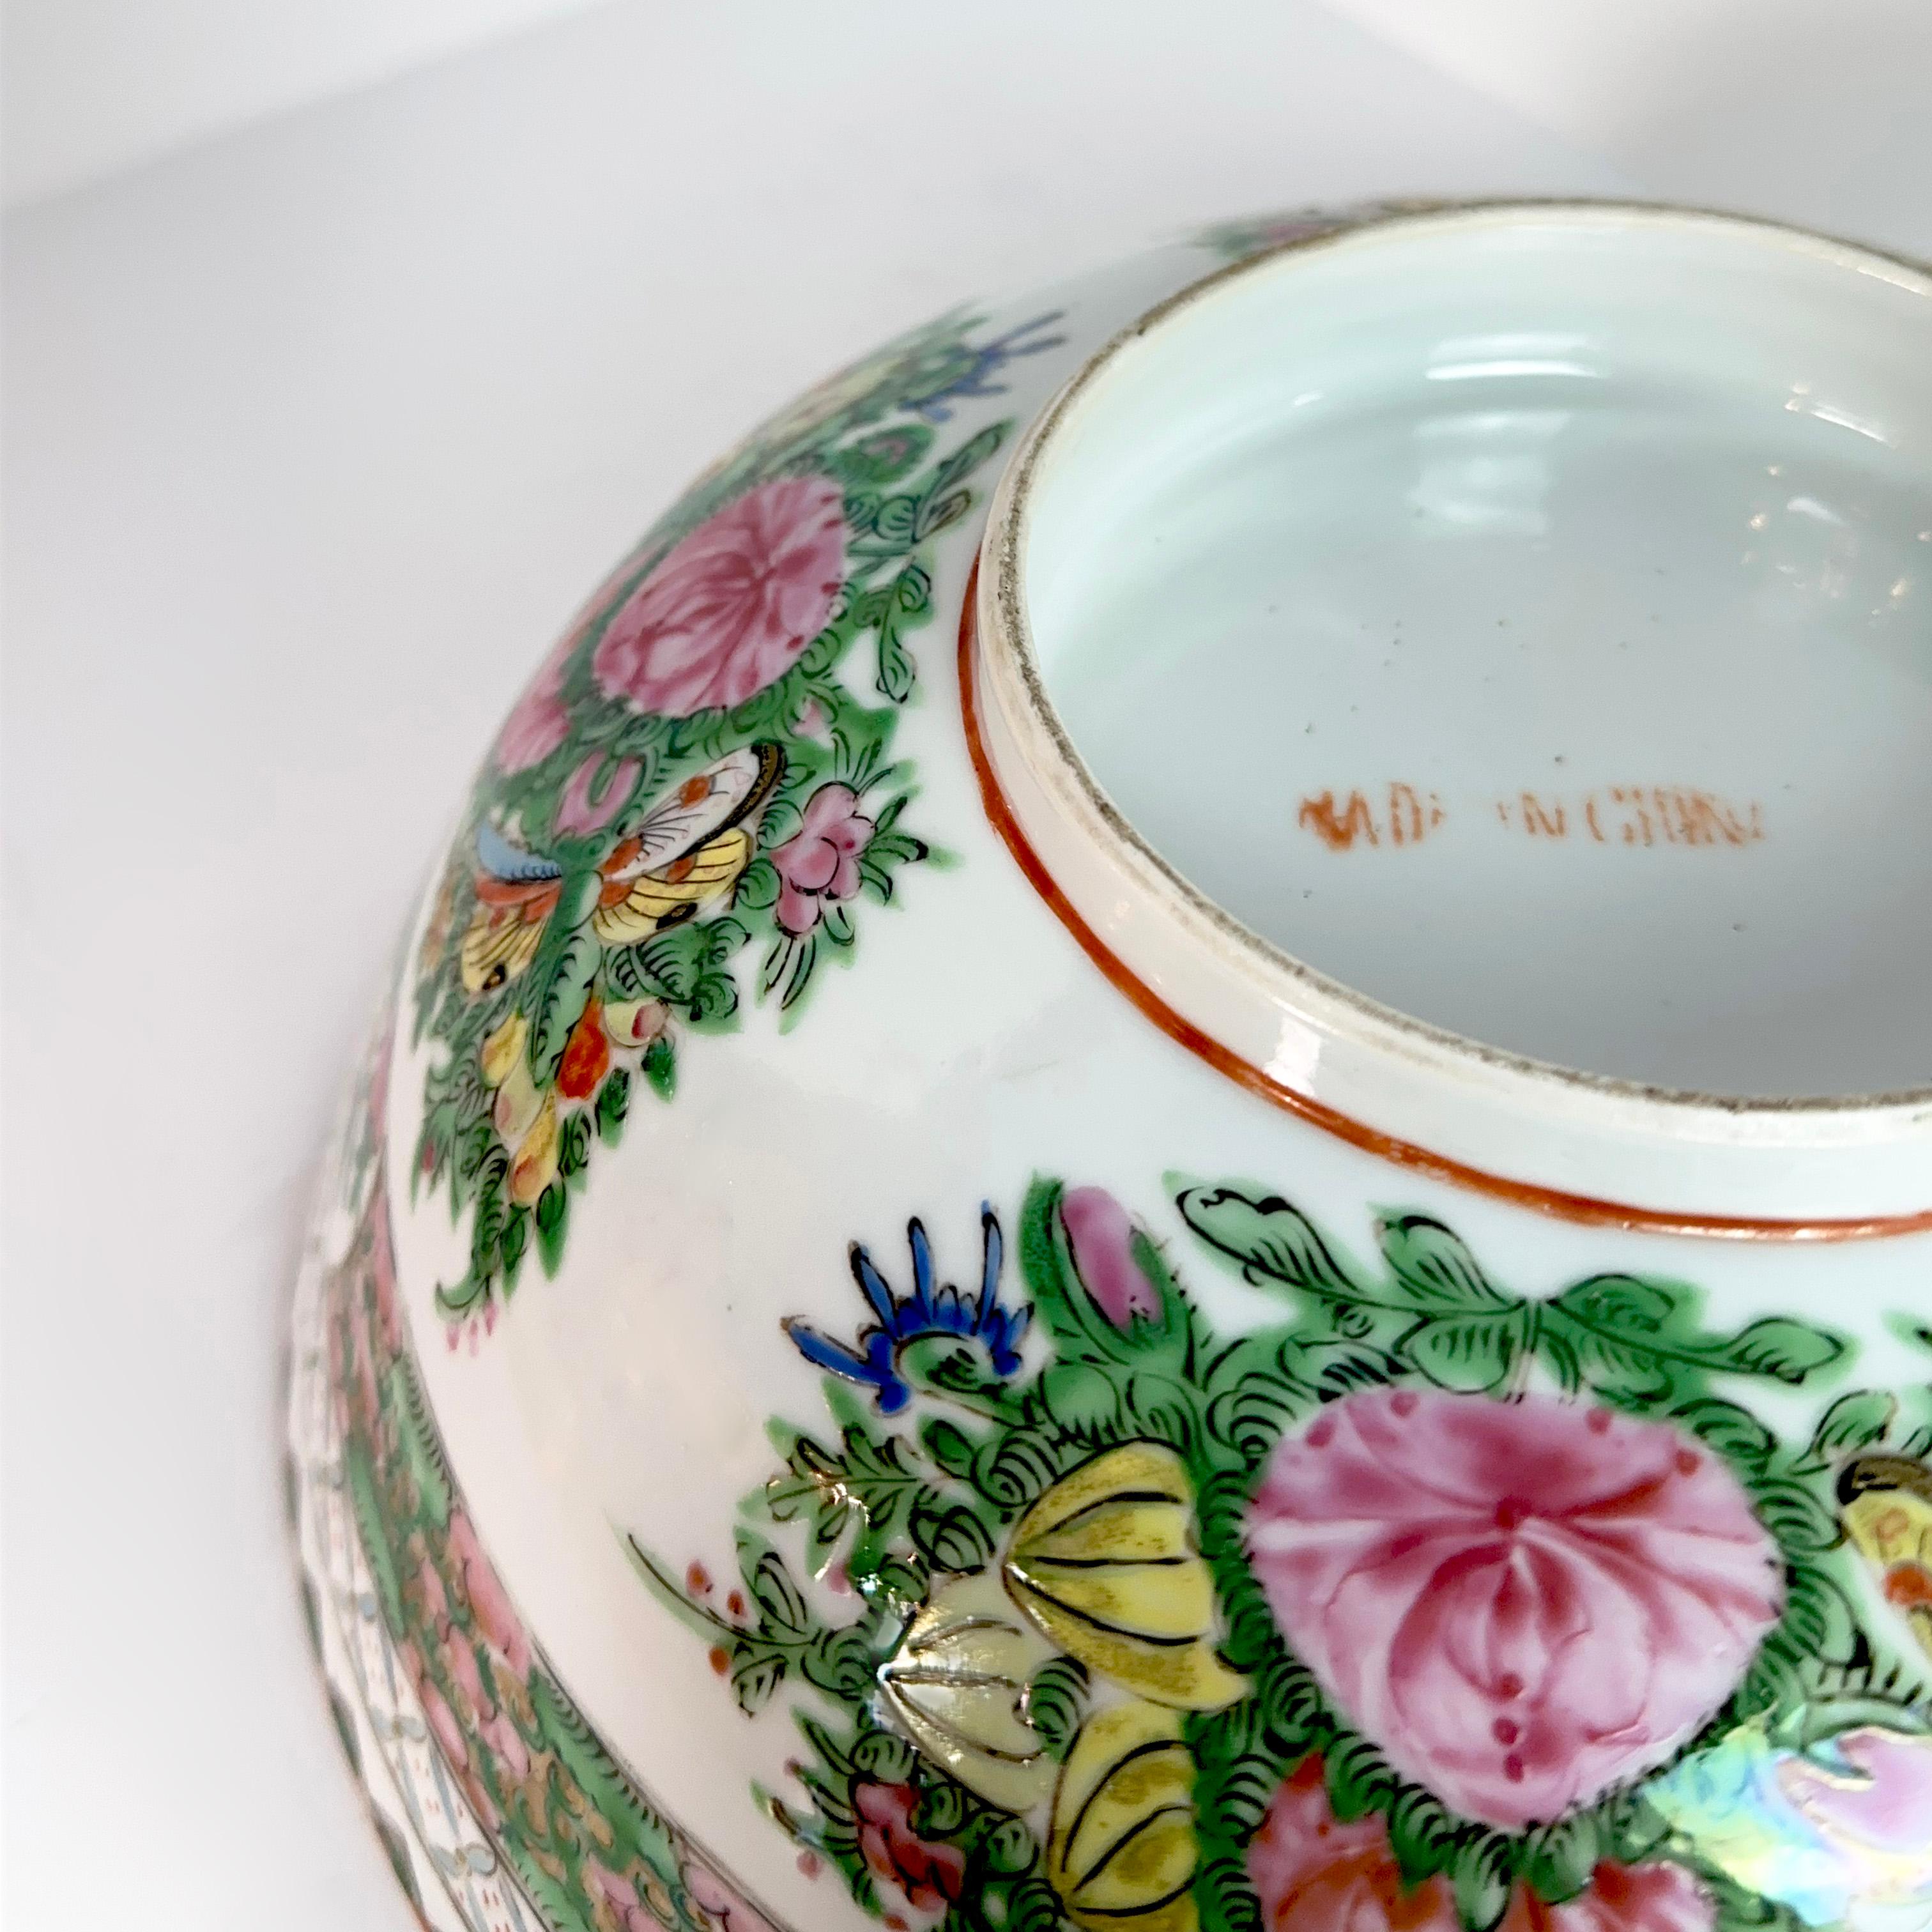 Cette splendide pièce de porcelaine chinoise, ornée du style vibrant du médaillon de roses, est un grand bol de Canton à médaillon de roses qui vous fera embrasser l'attrait de l'histoire. La finition émaillée peinte à la main présente une scène